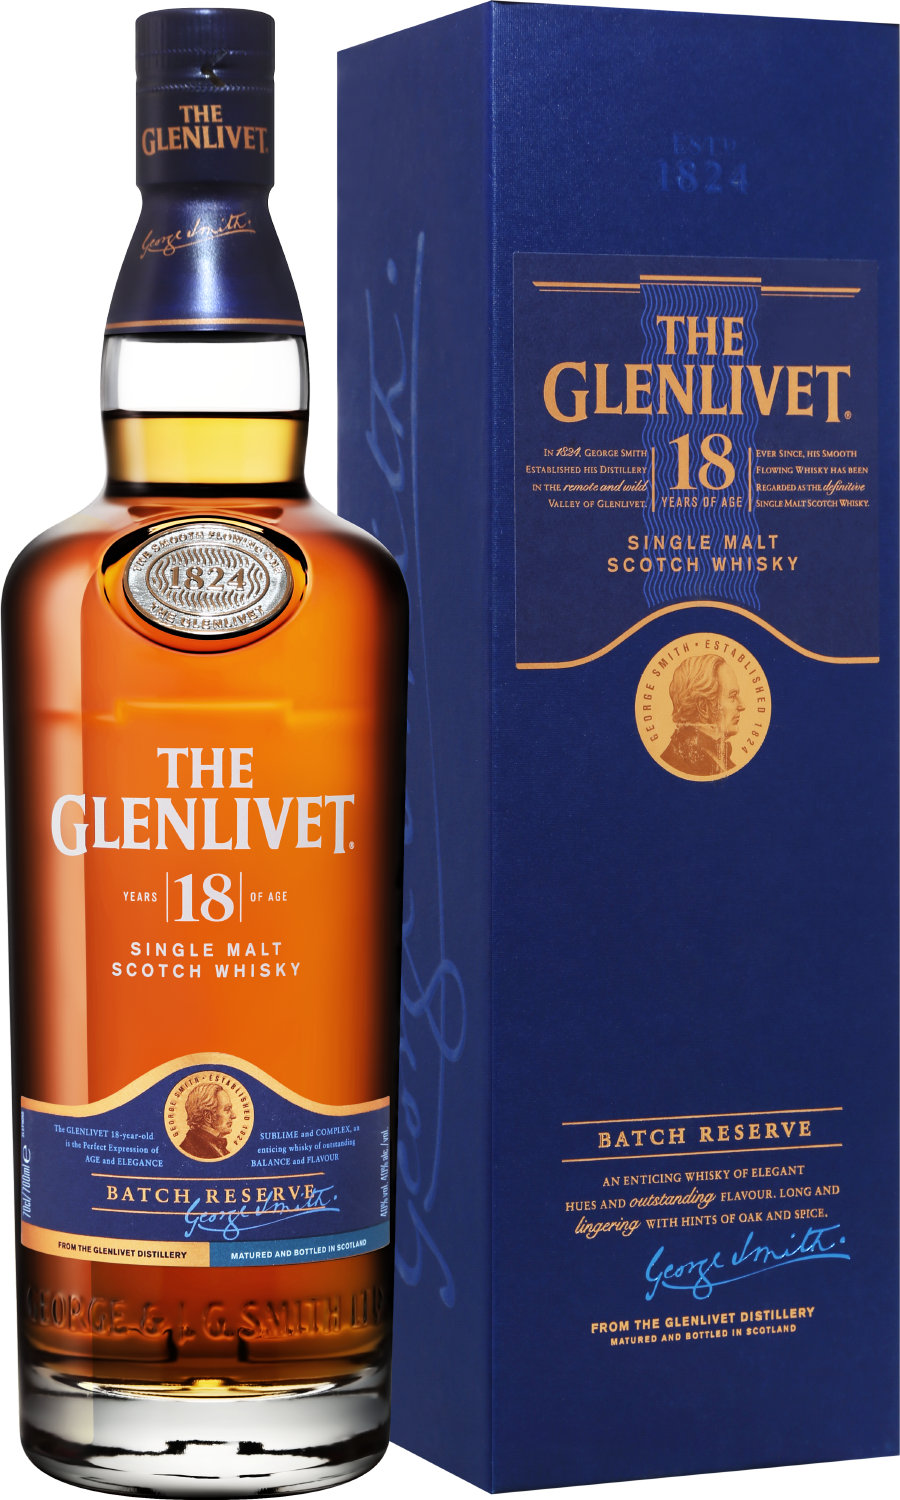 The Glenlivet Single Malt Scotch Whisky 18 y.o. (gift box) tomintoul speyside glenlivet peaty tang single malt scotch whisky gift box